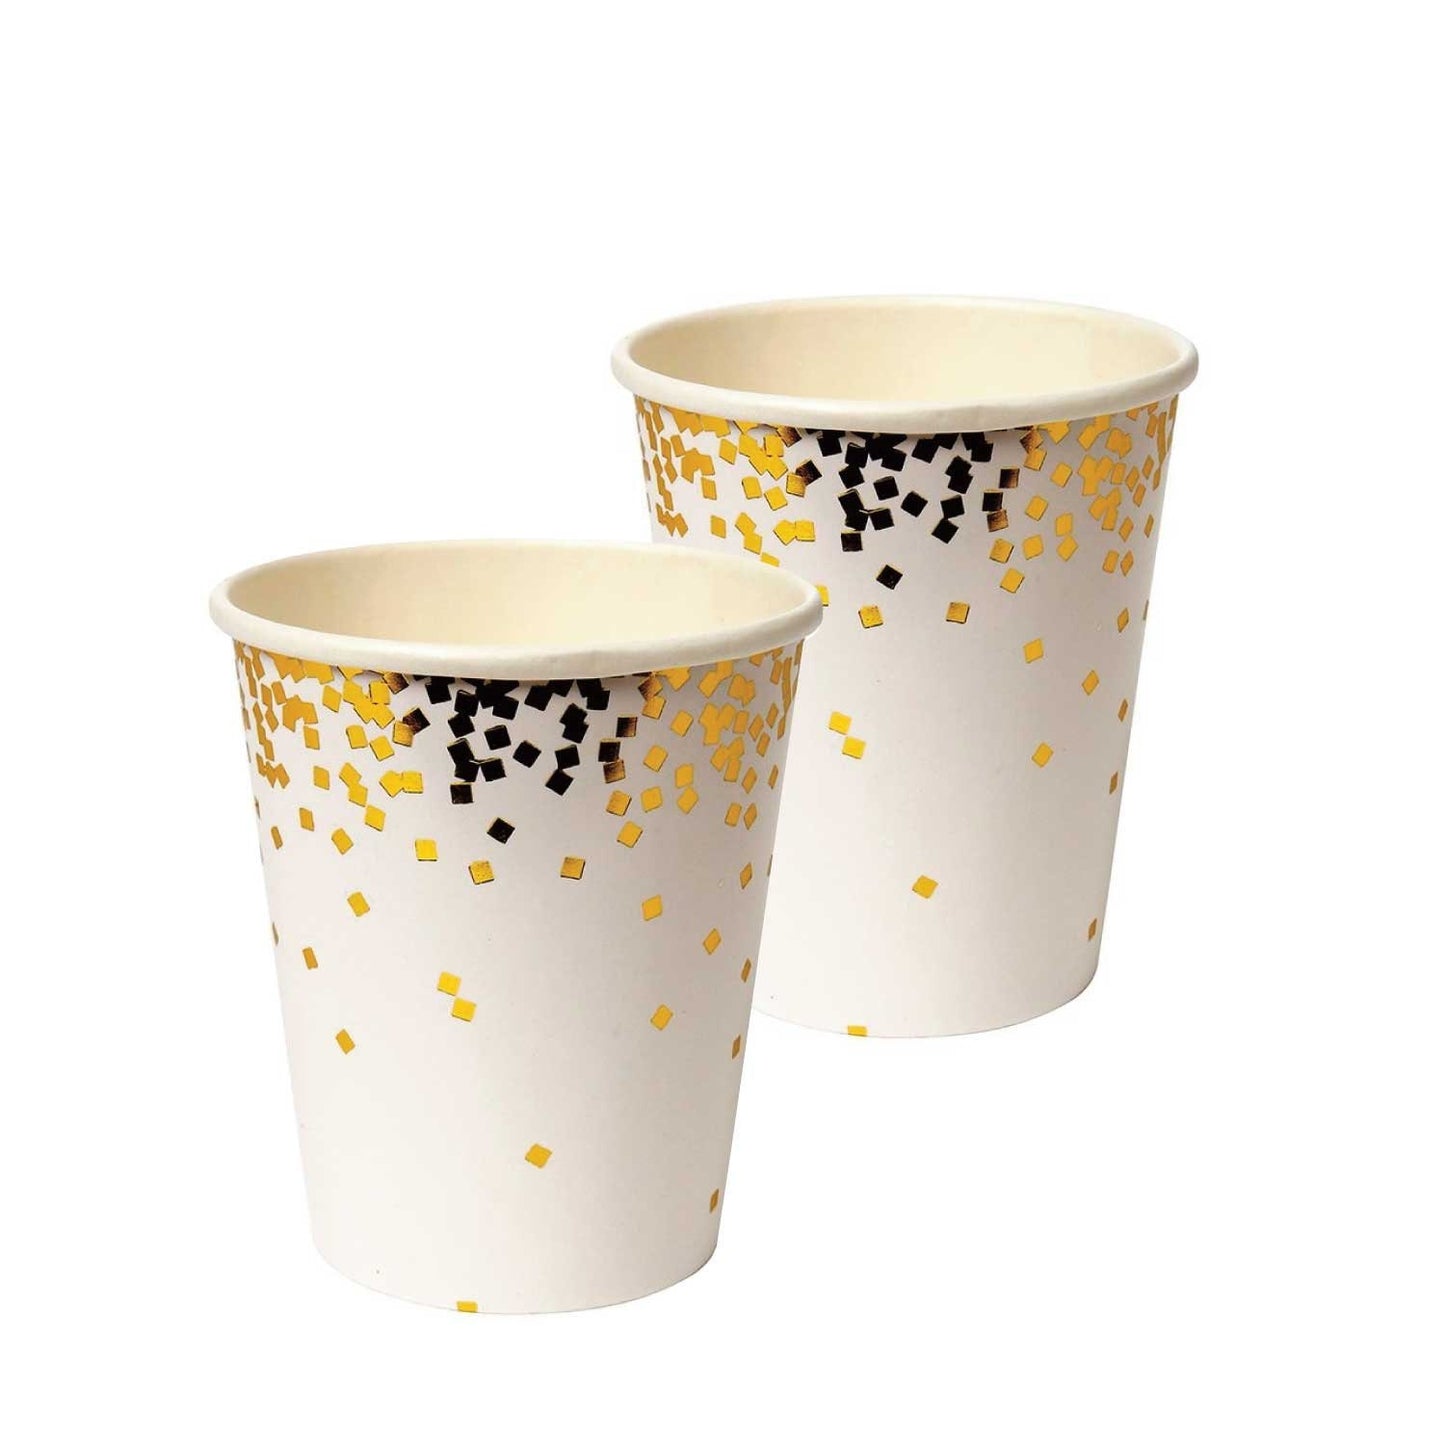 Gold Confetti Paper Cups